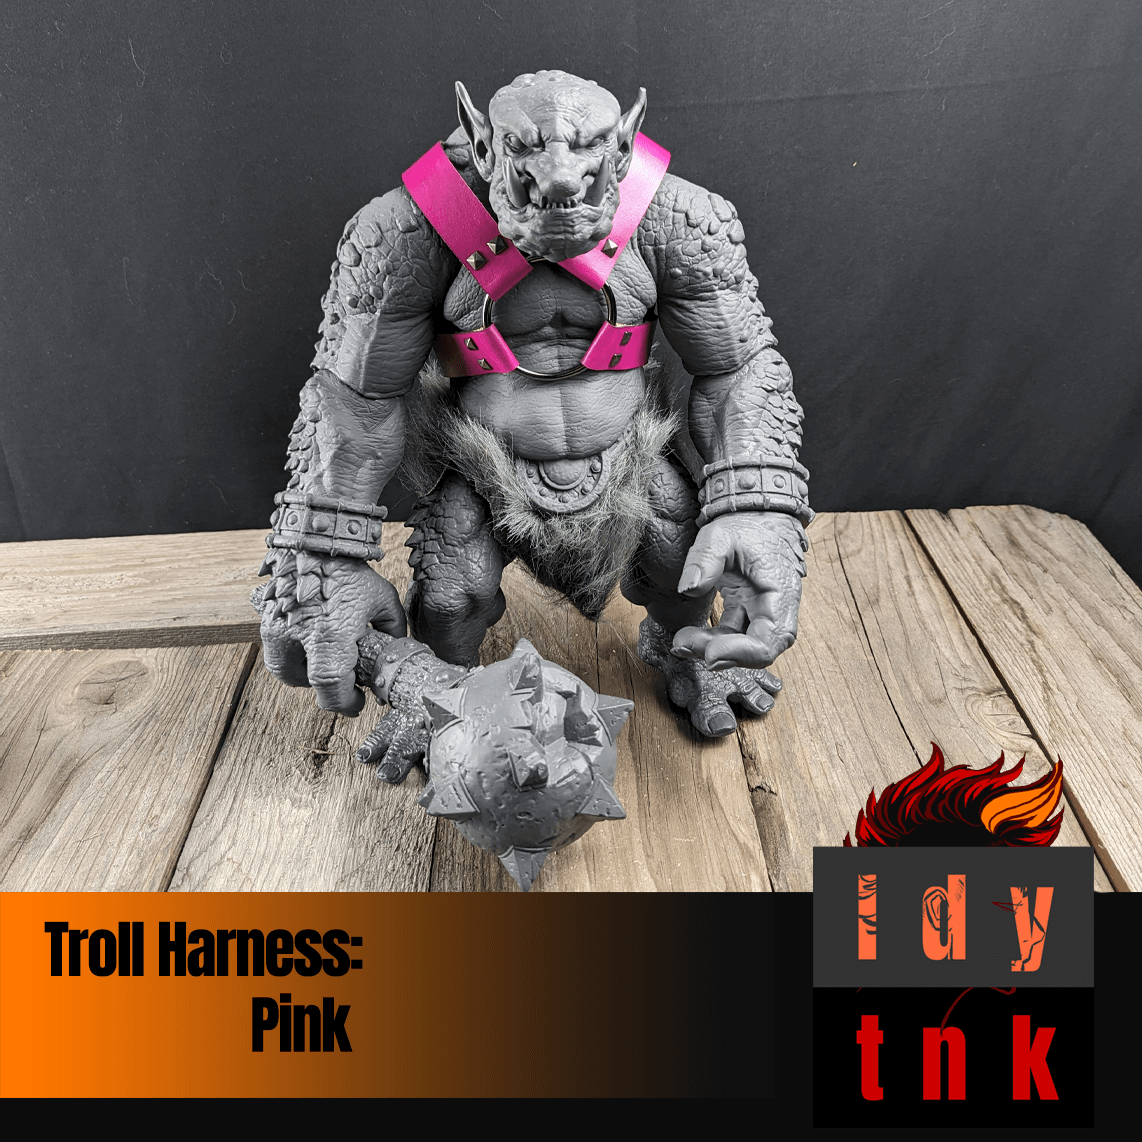 Troll Harness: Pink